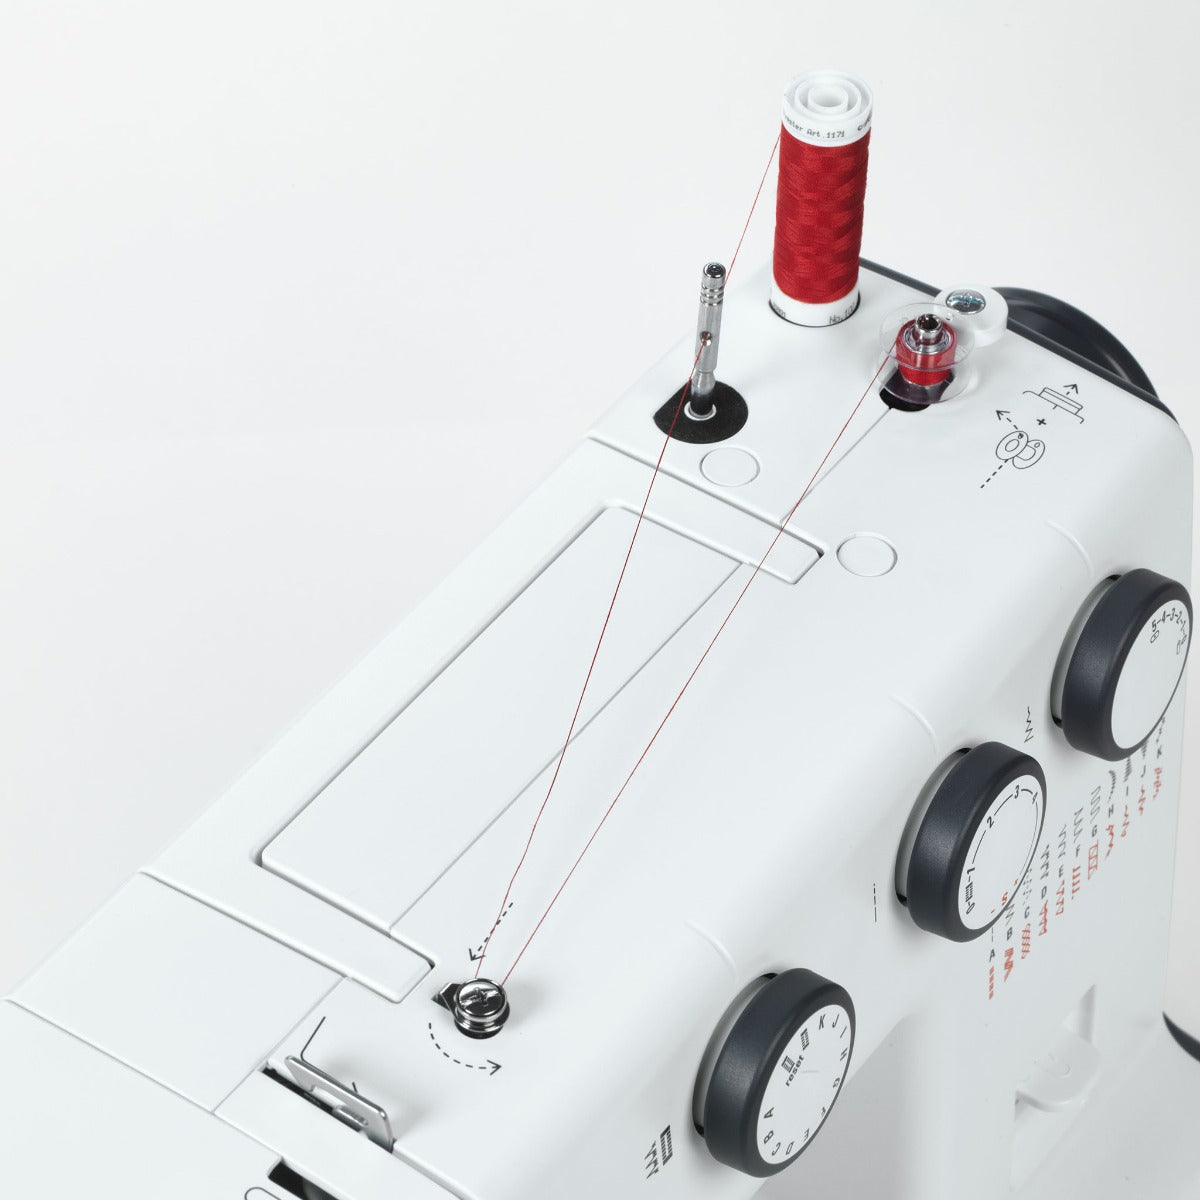 Bernette 35 - Sewing Machine